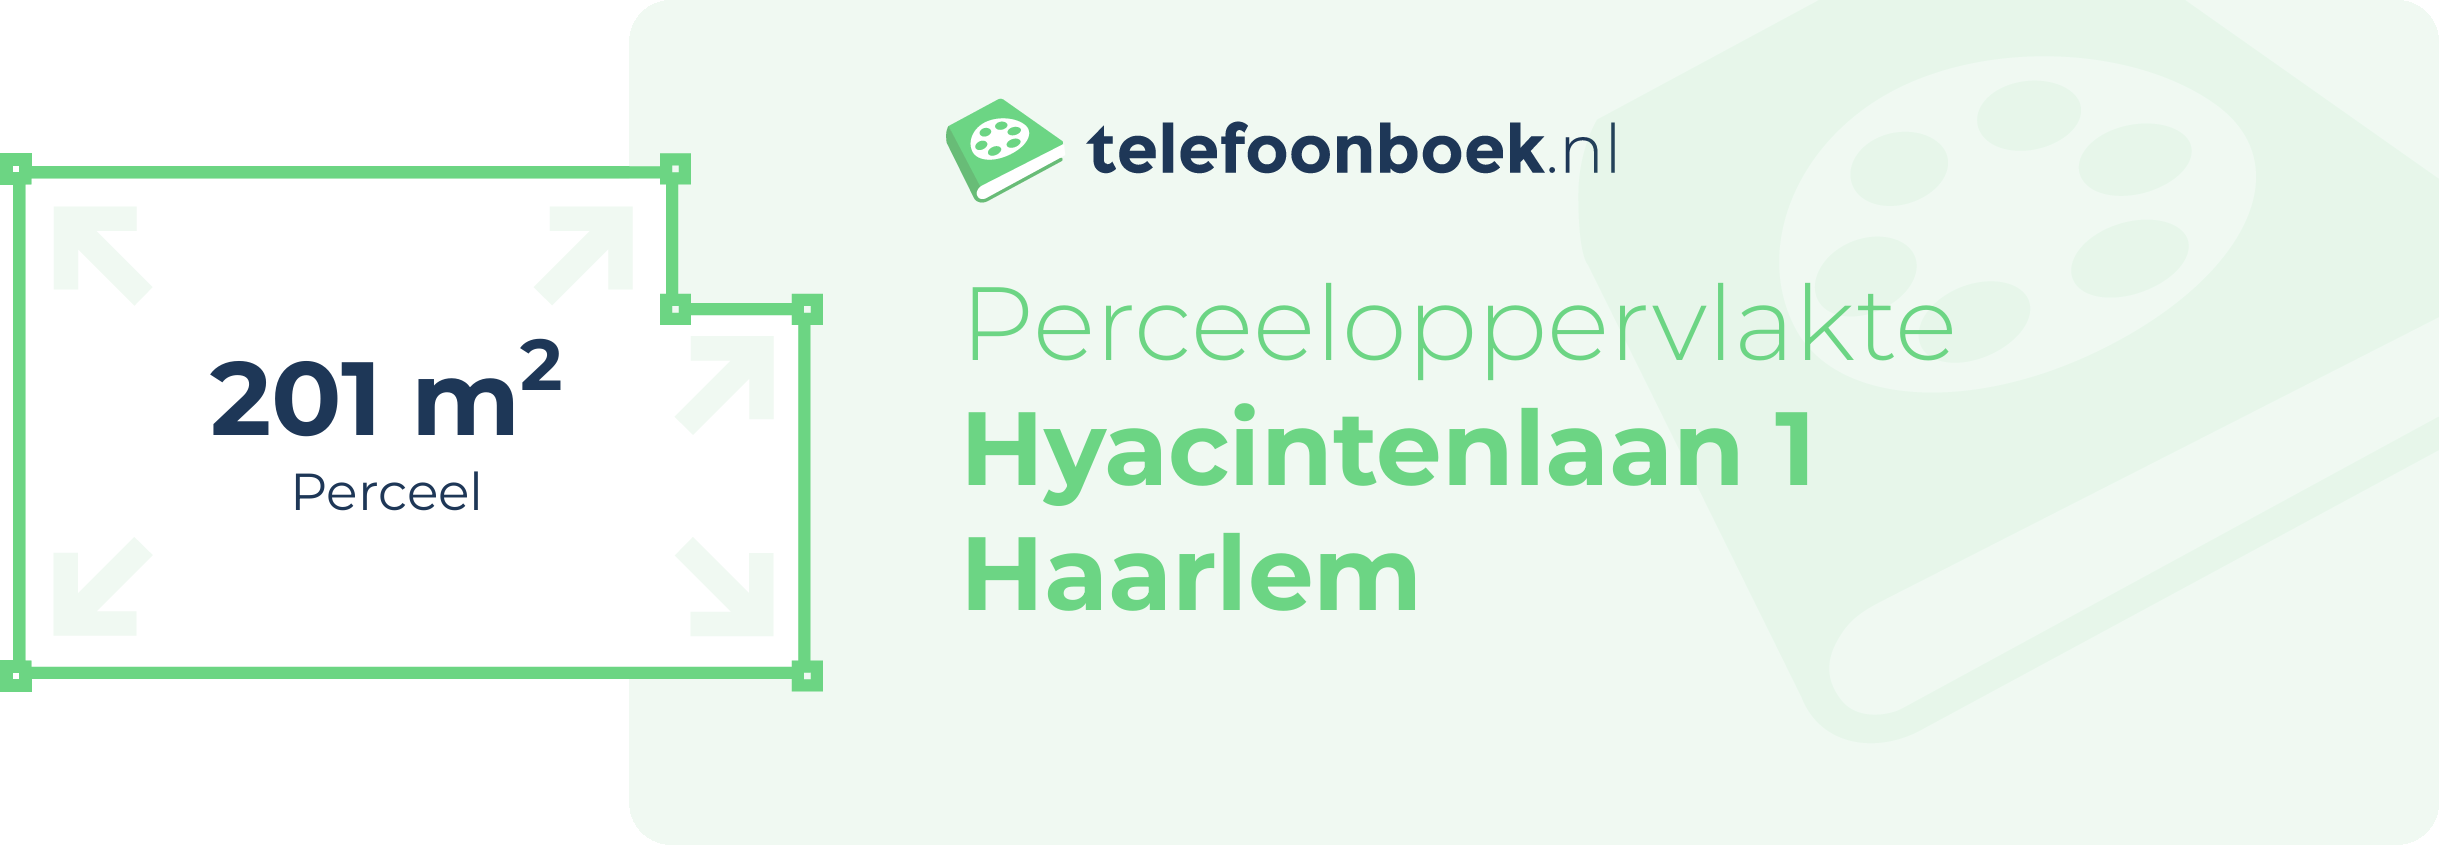 Perceeloppervlakte Hyacintenlaan 1 Haarlem